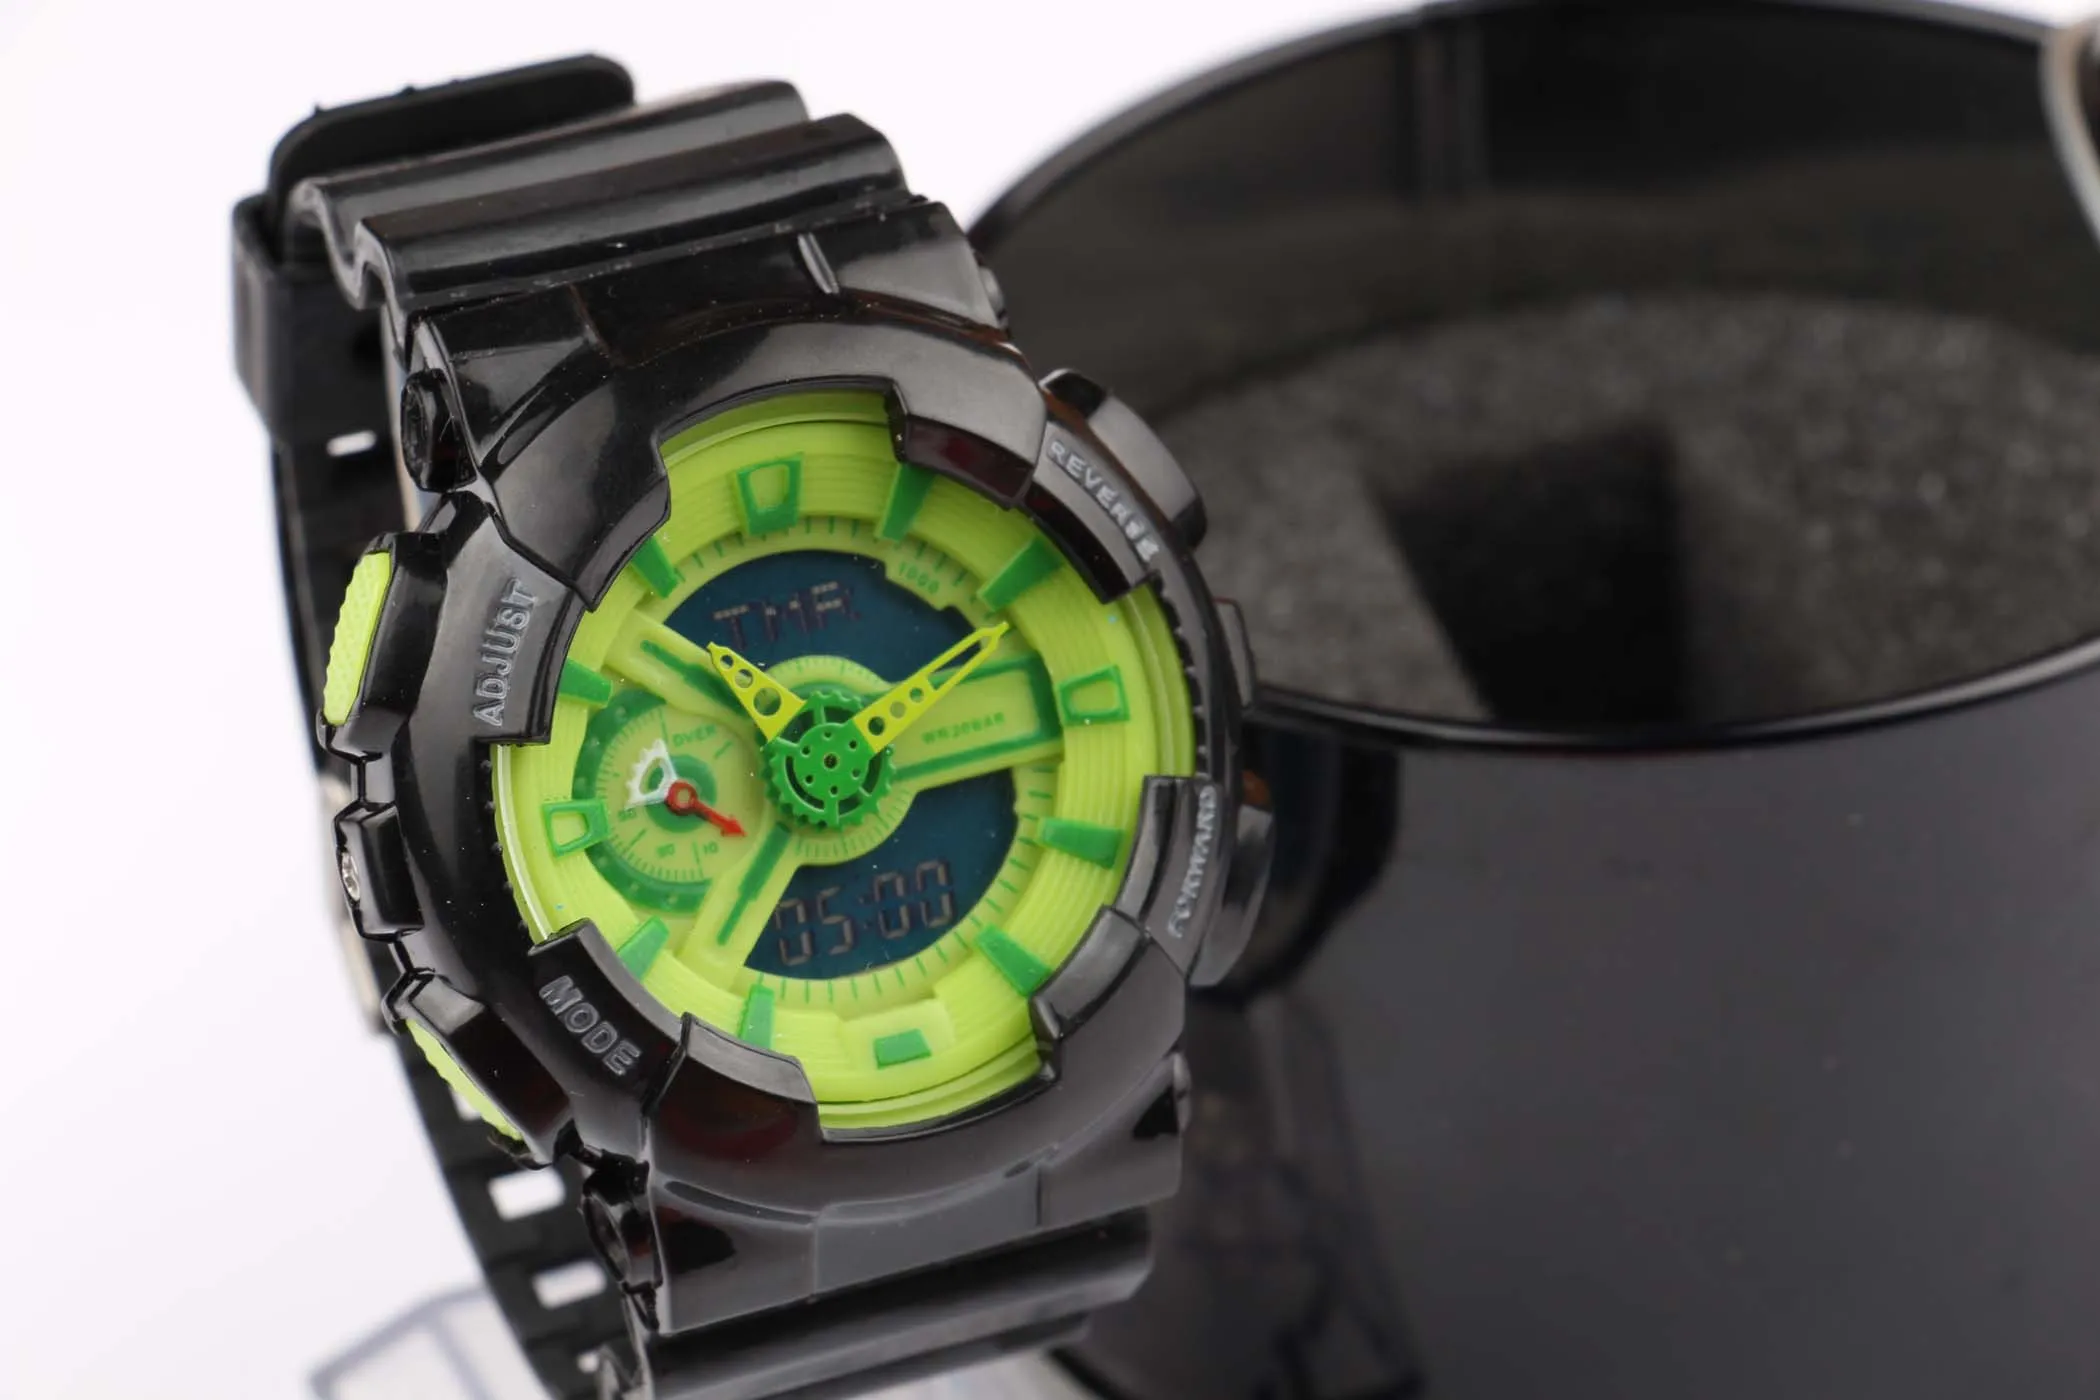 2019 Nuevo reloj deportivo para hombre, reloj de marca de moda para hombre, relojes digitales y analógicos, relojes CAG para hombre 231f